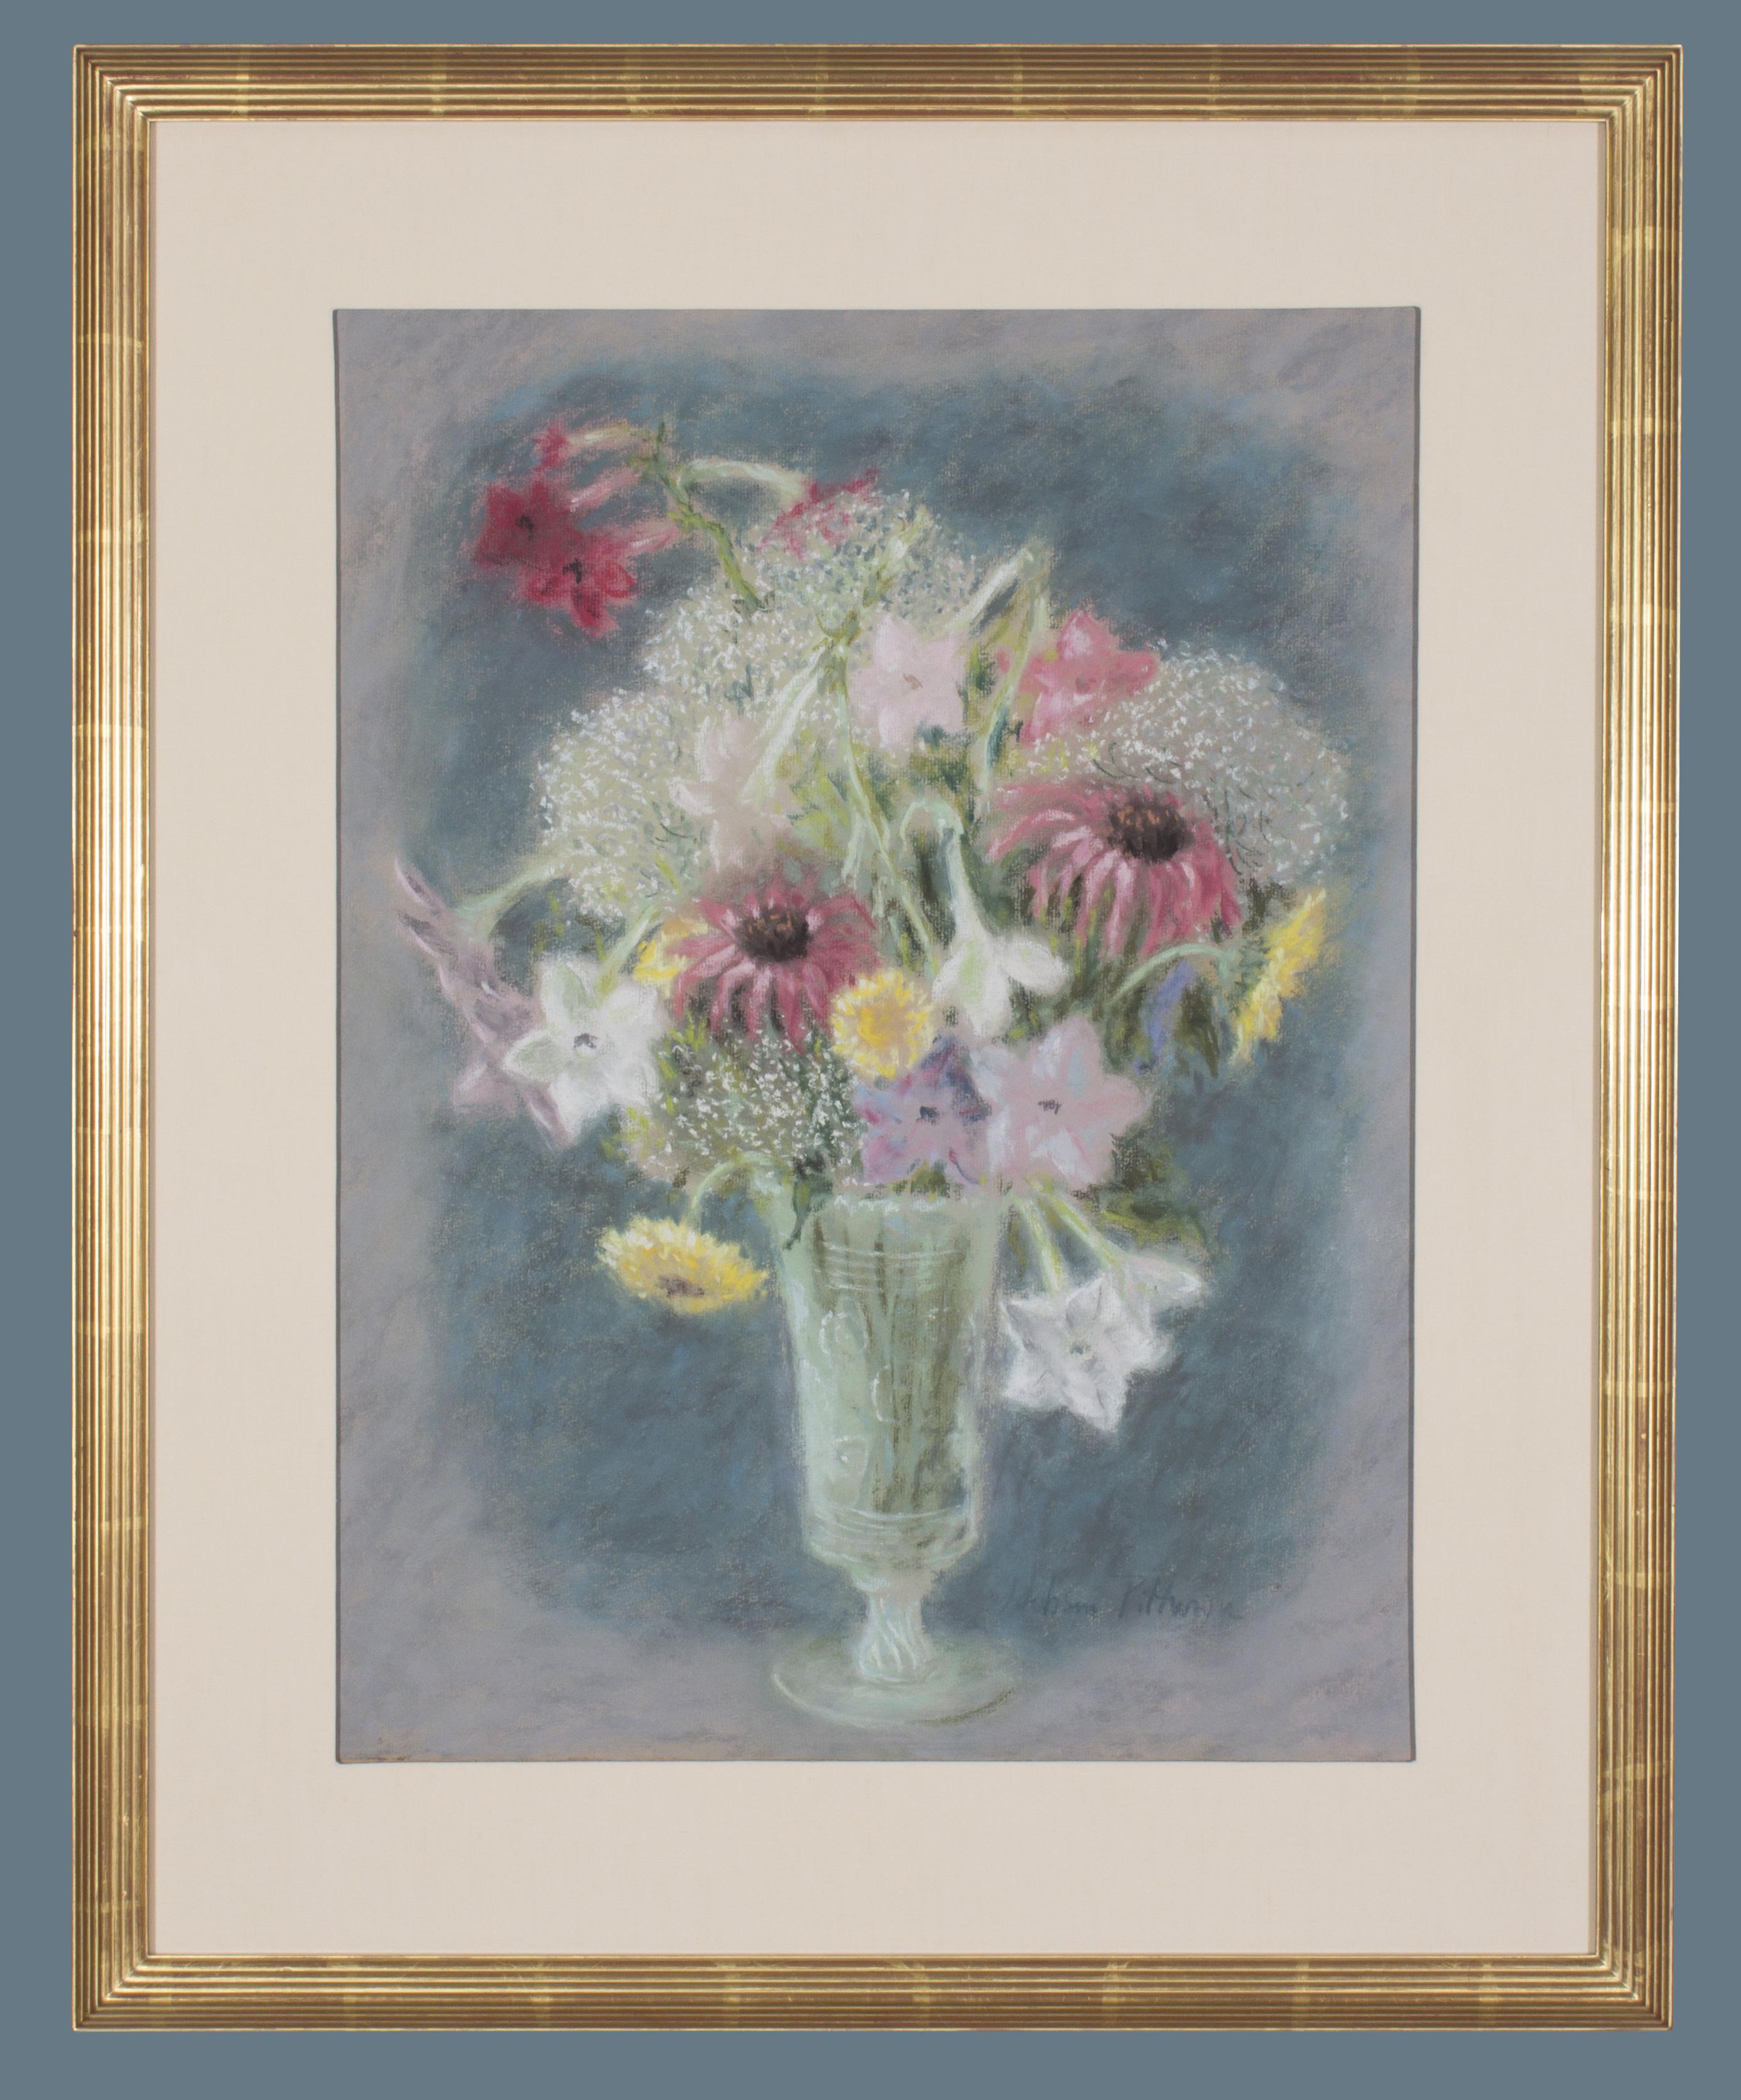 Blumenstrauß in einer Glasvase – ein Pastell von Hobson Pittman